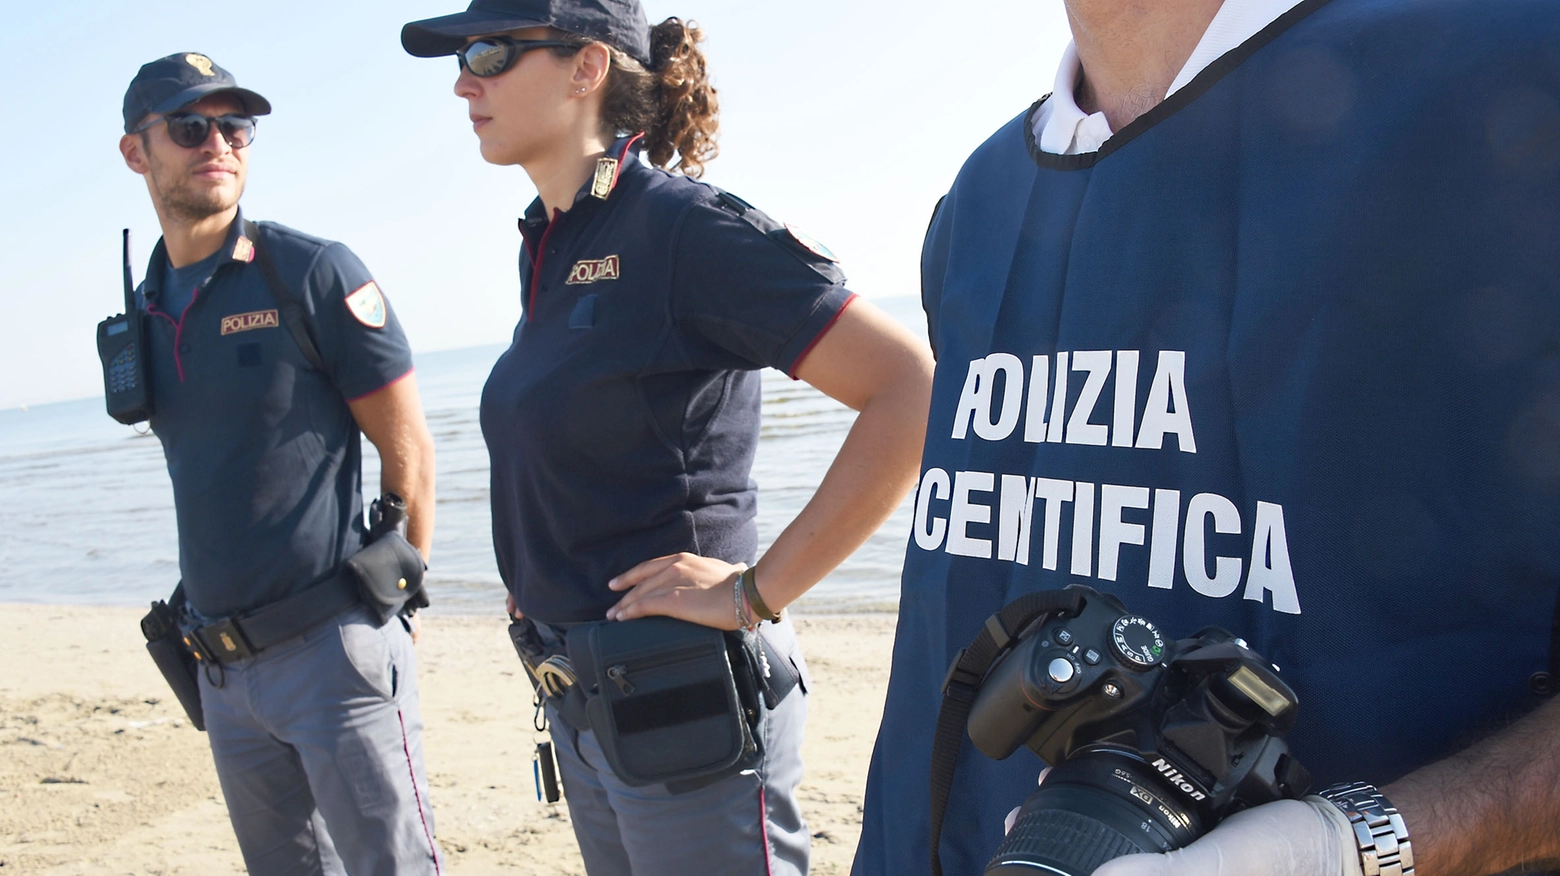 Polizia scientifica, ossa umane ritrovate sulla spiaggia (immagini d'archivio)